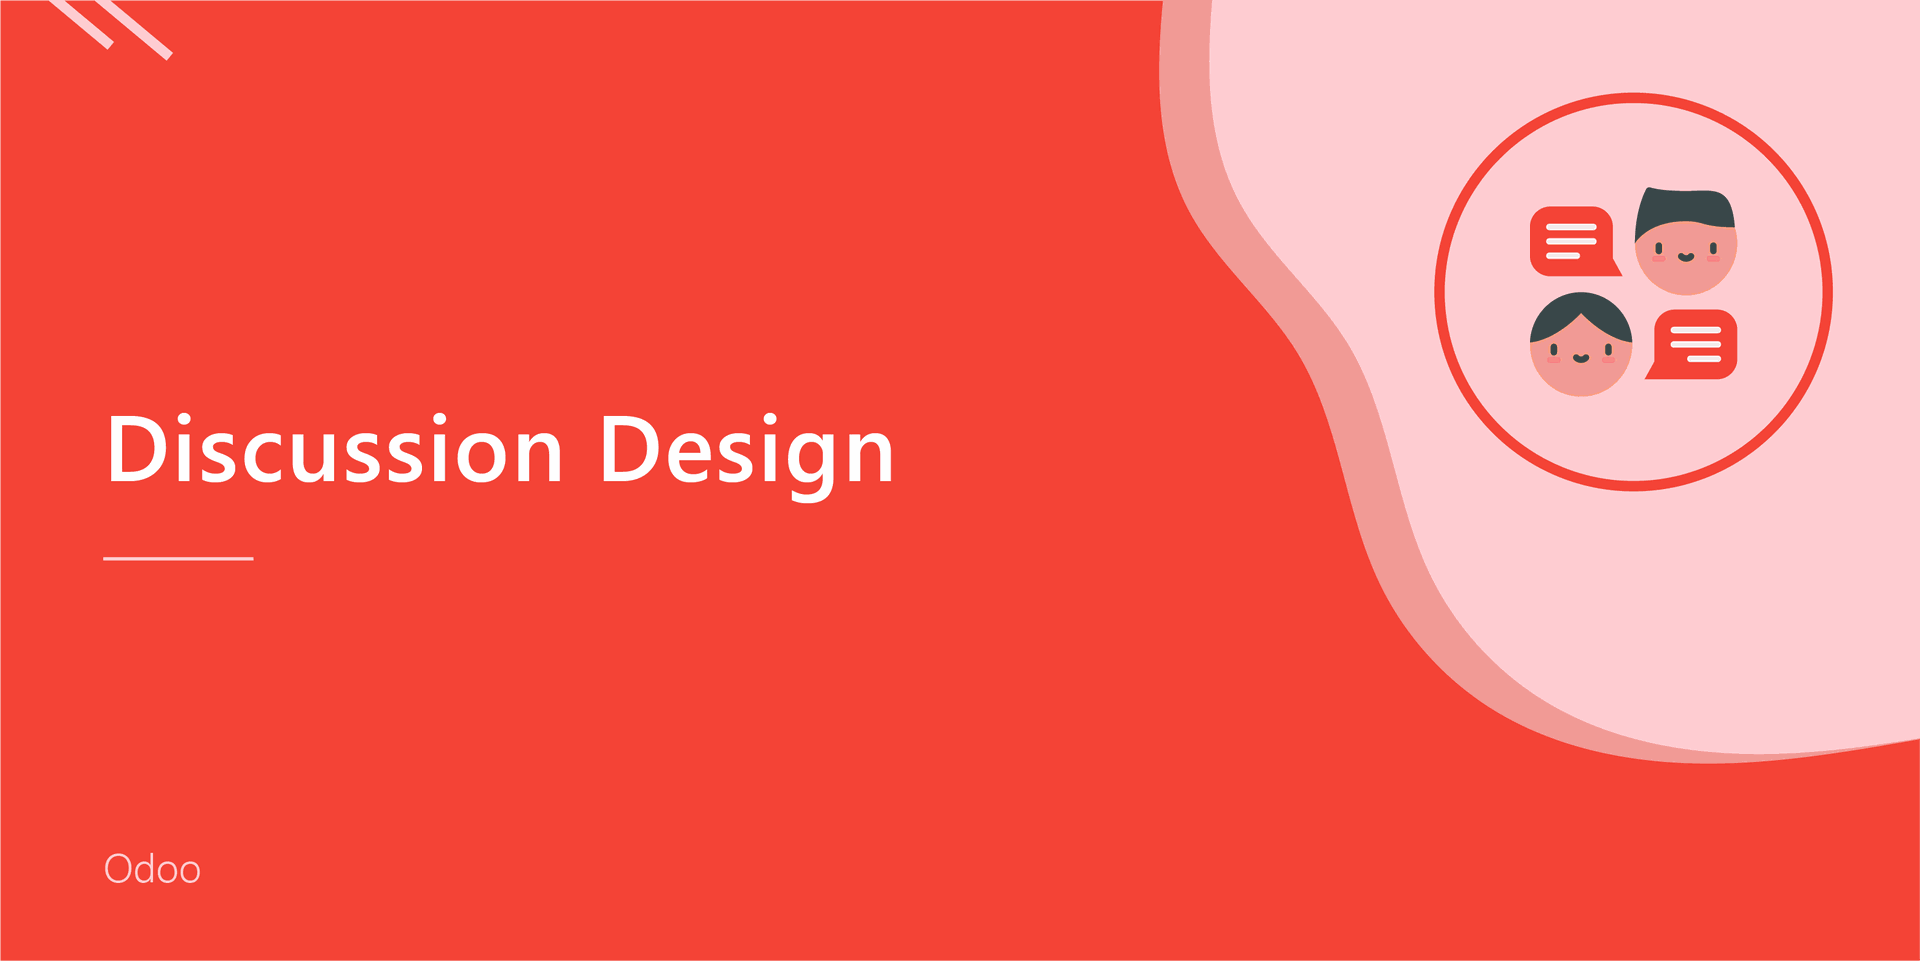 Discussion Design